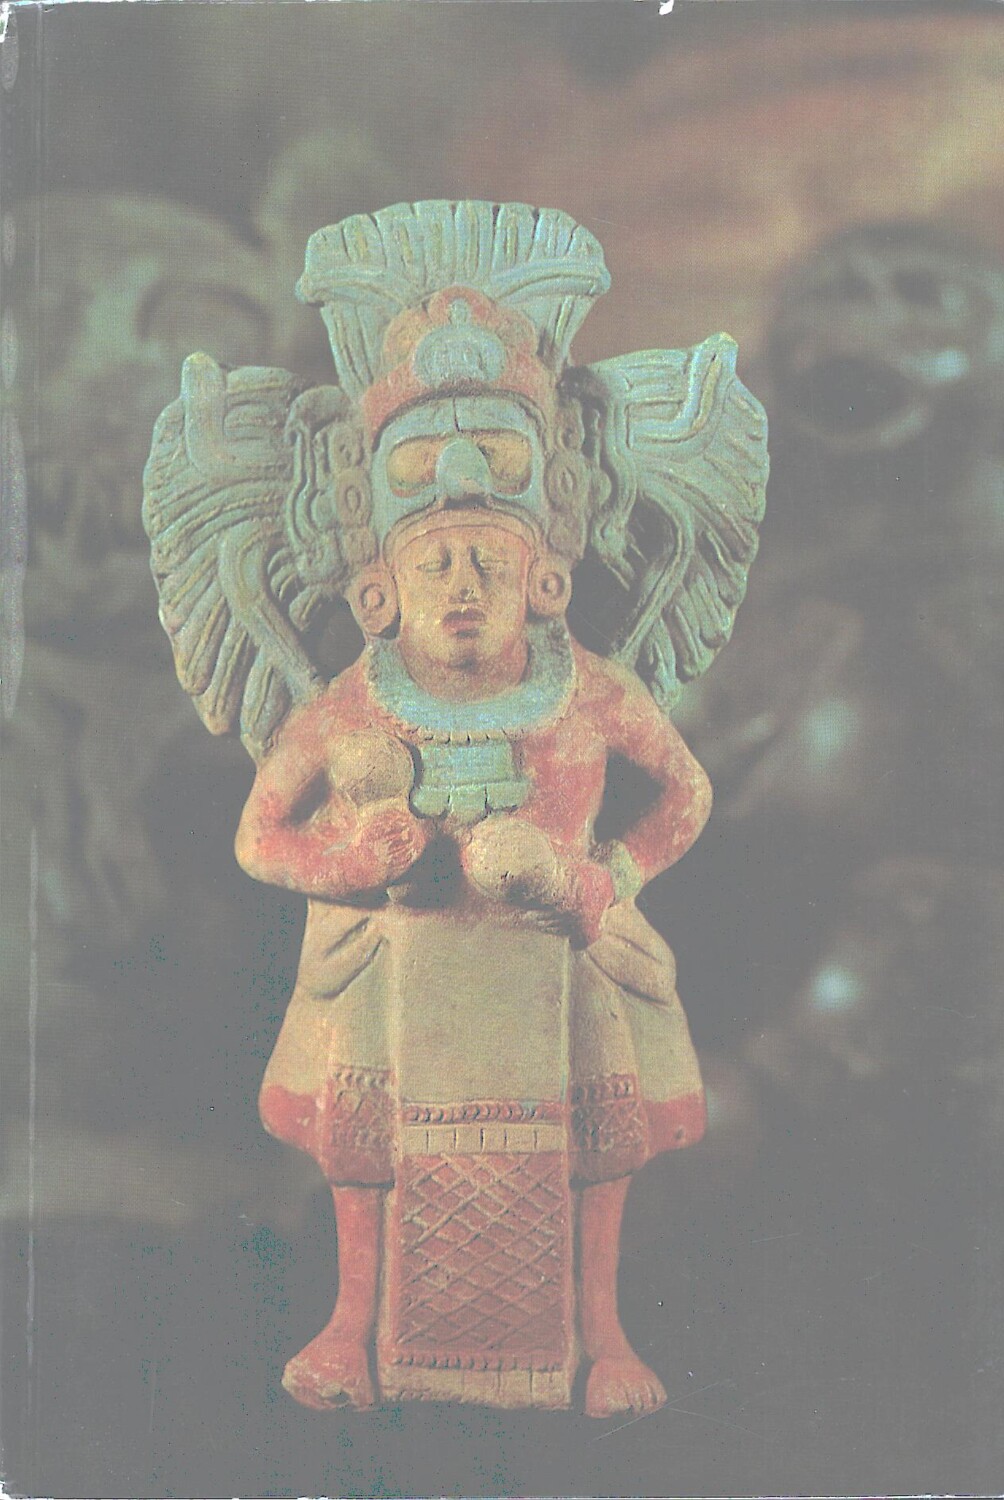 Kunst der Maya di Maurer, Ingeborg - Libro in Tedesco ed. Rautenstrauch Joest...